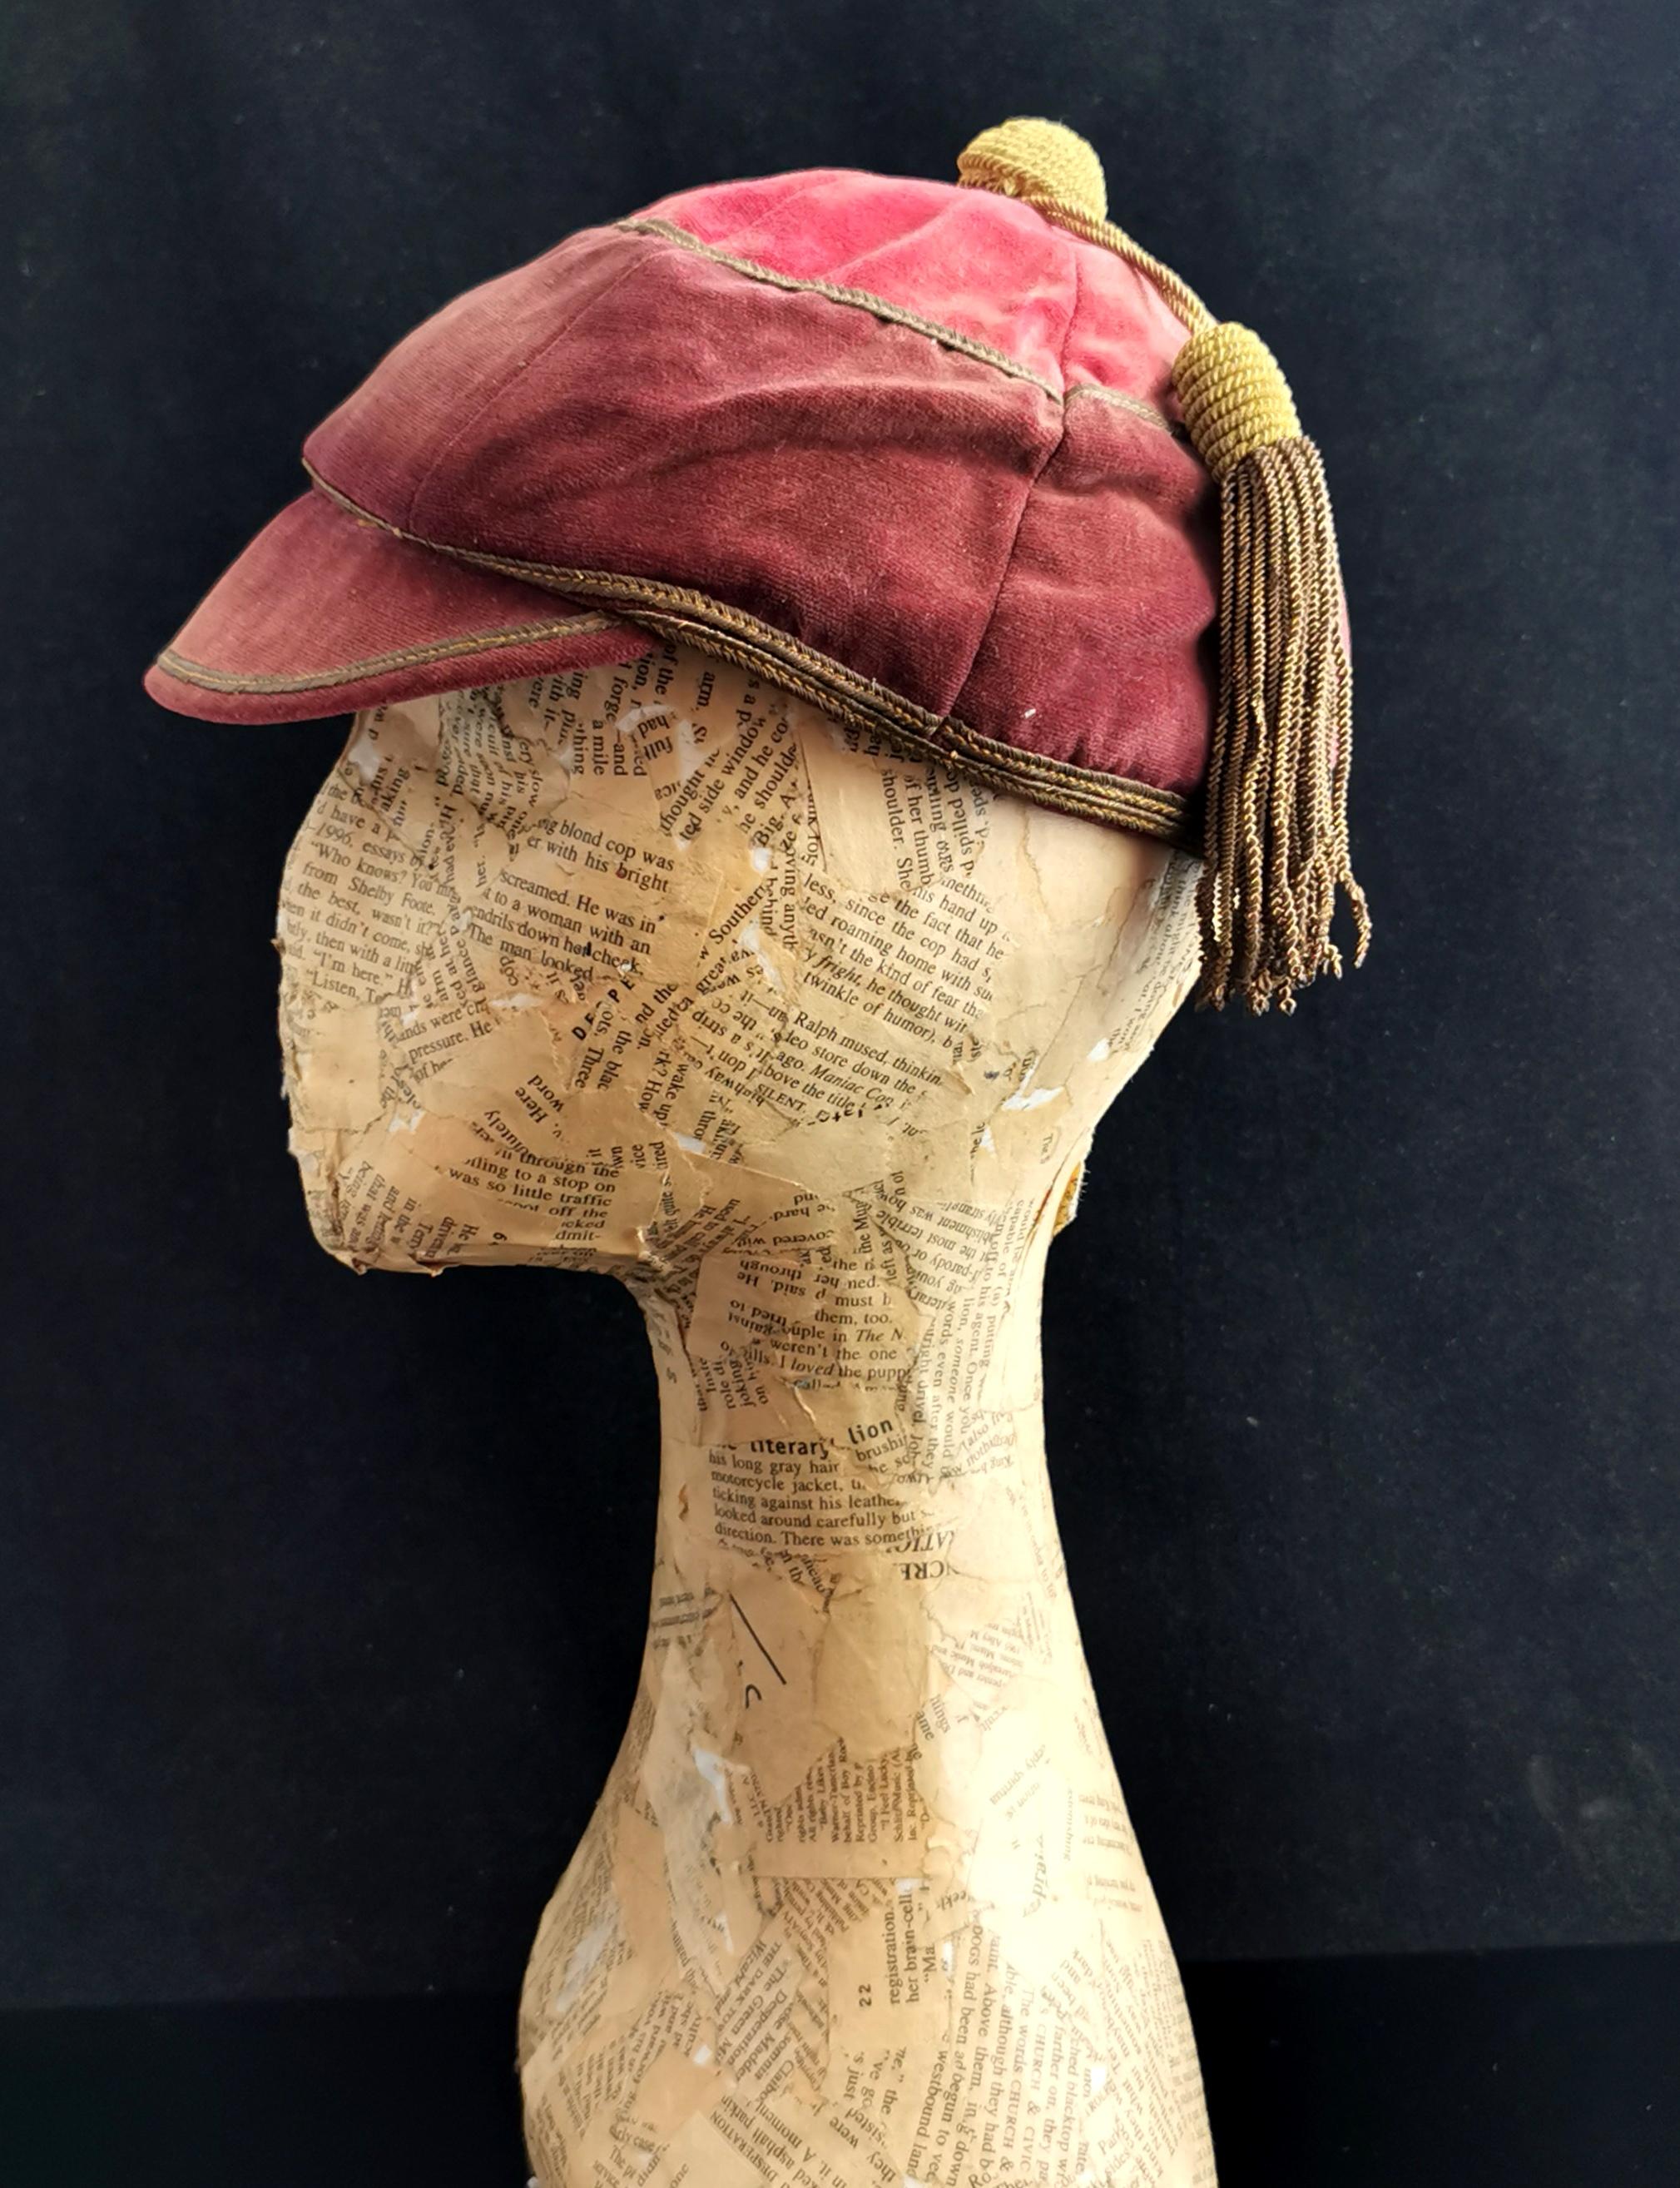 Eine seltene antike Sportmütze oder Jockeys Cap.

Dieses prächtige und seltene Stück ist nicht nur ein Stück Modegeschichte, sondern auch ein fantastisches Sportrelikt.

Sie ist aus rotem und goldenem Samt mit einem Satinfutter gefertigt.

Die CAP